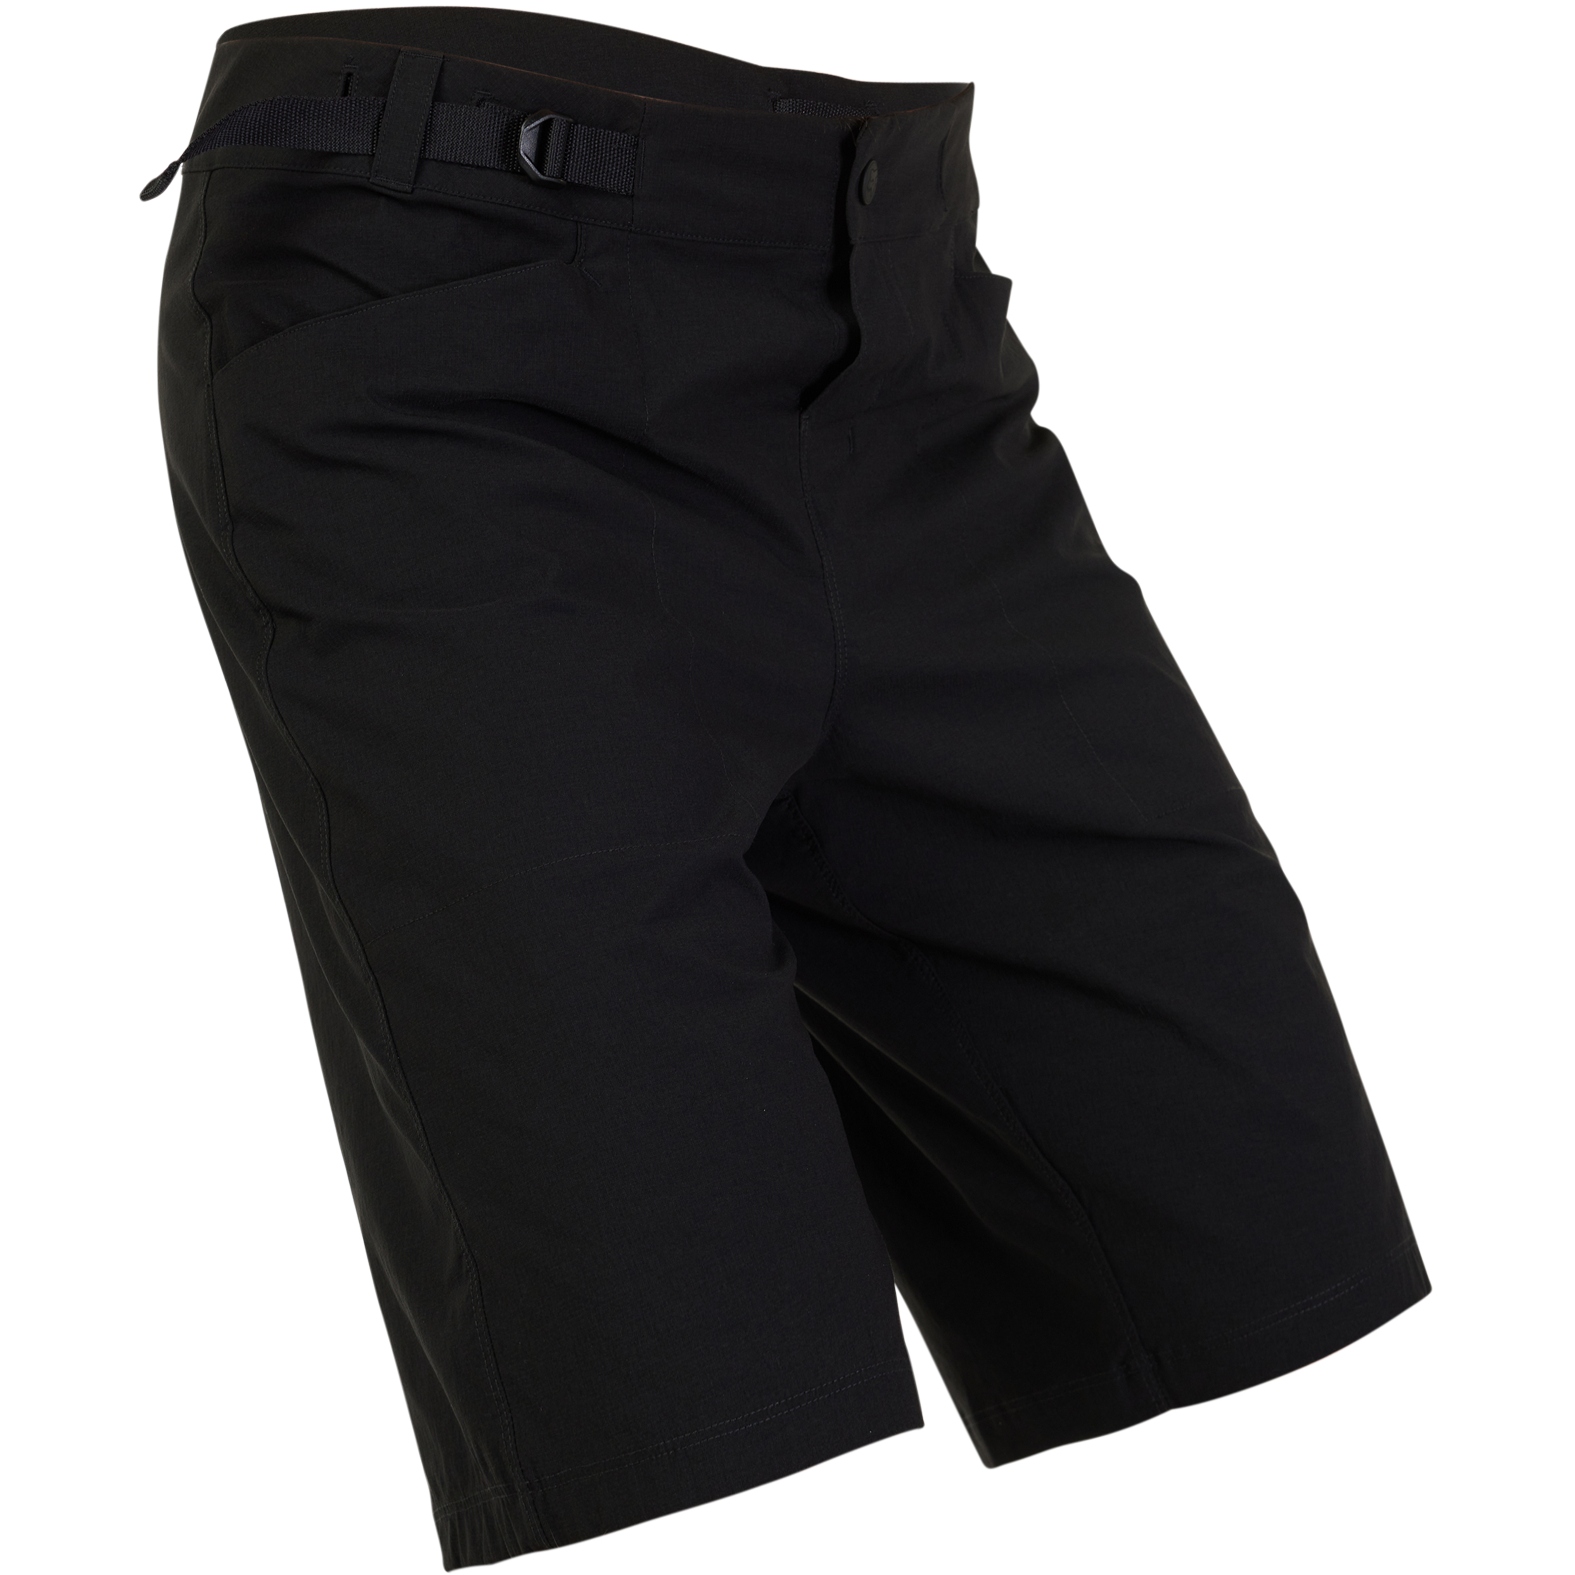 Productfoto van FOX Ranger Lite MTB Shorts Heren - zwart